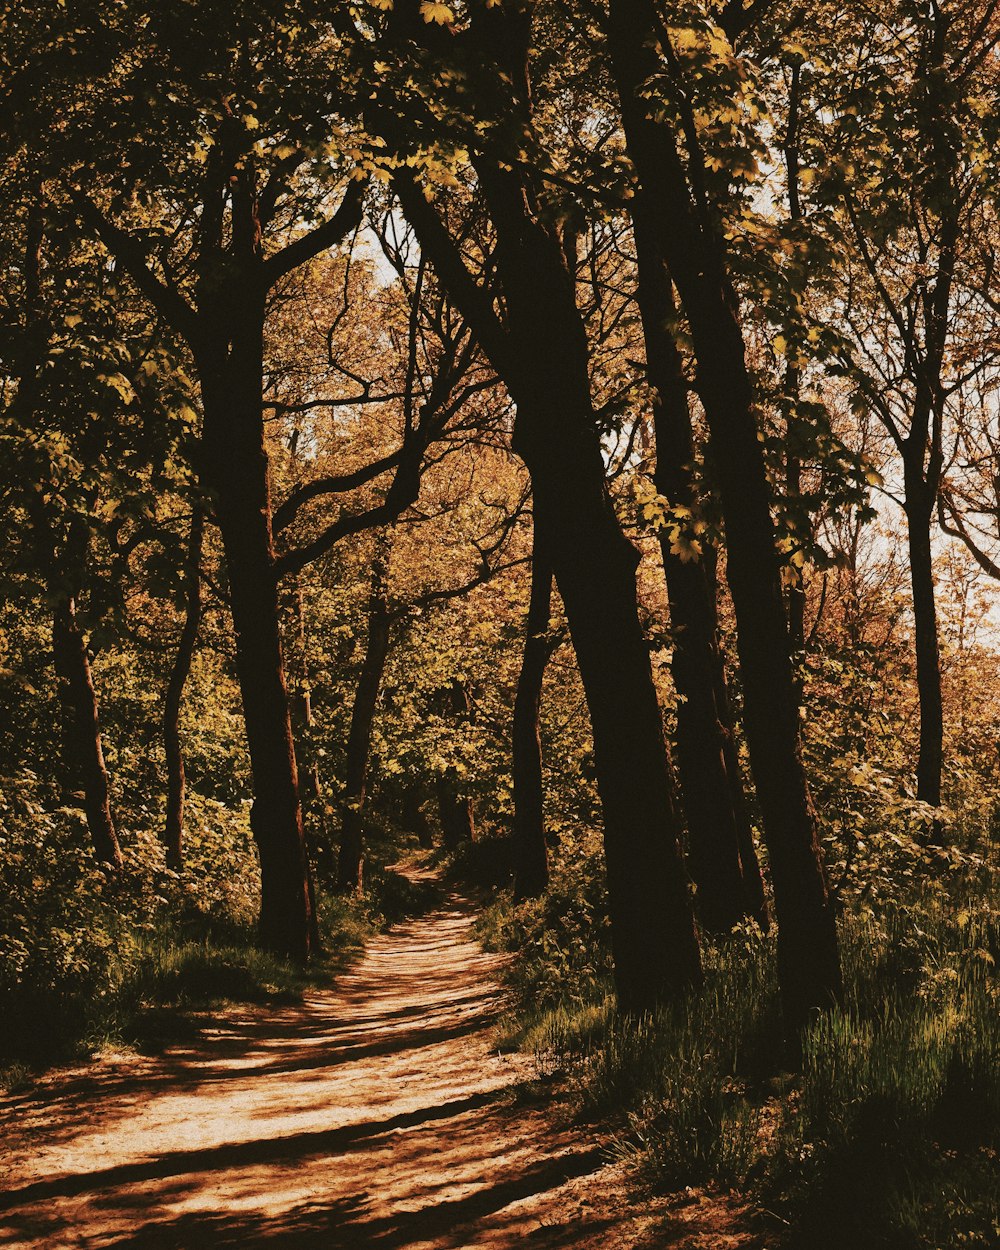 Un camino de tierra rodeado de árboles en un bosque